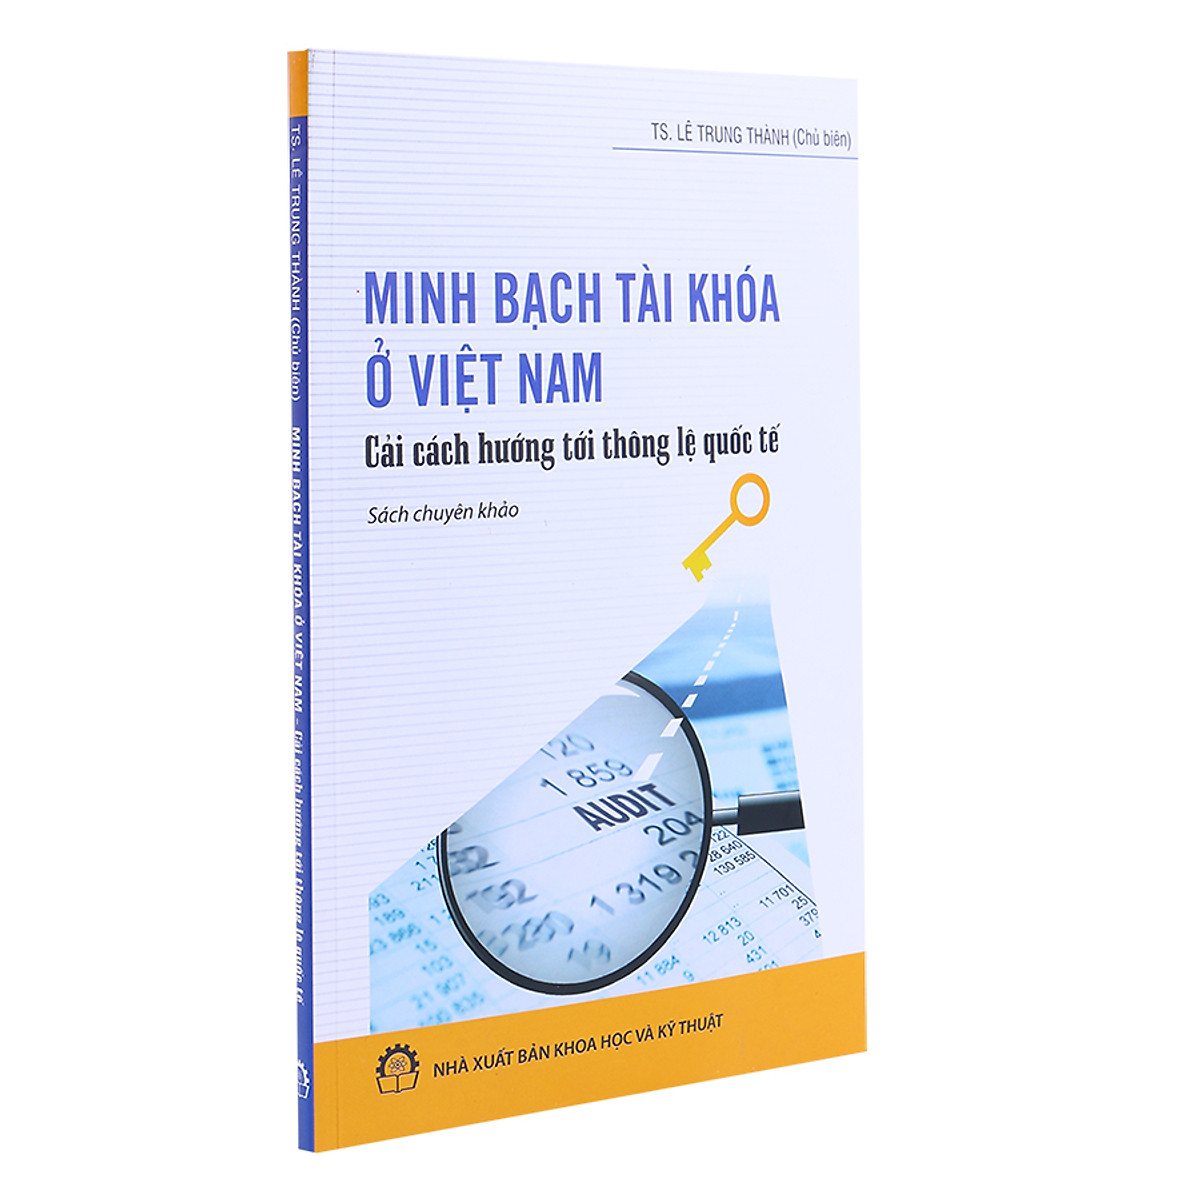 Minh Bạch Tài Khóa Ở Việt Nam - Cải Cách Hướng Tới Thông Lệ Quốc Tế